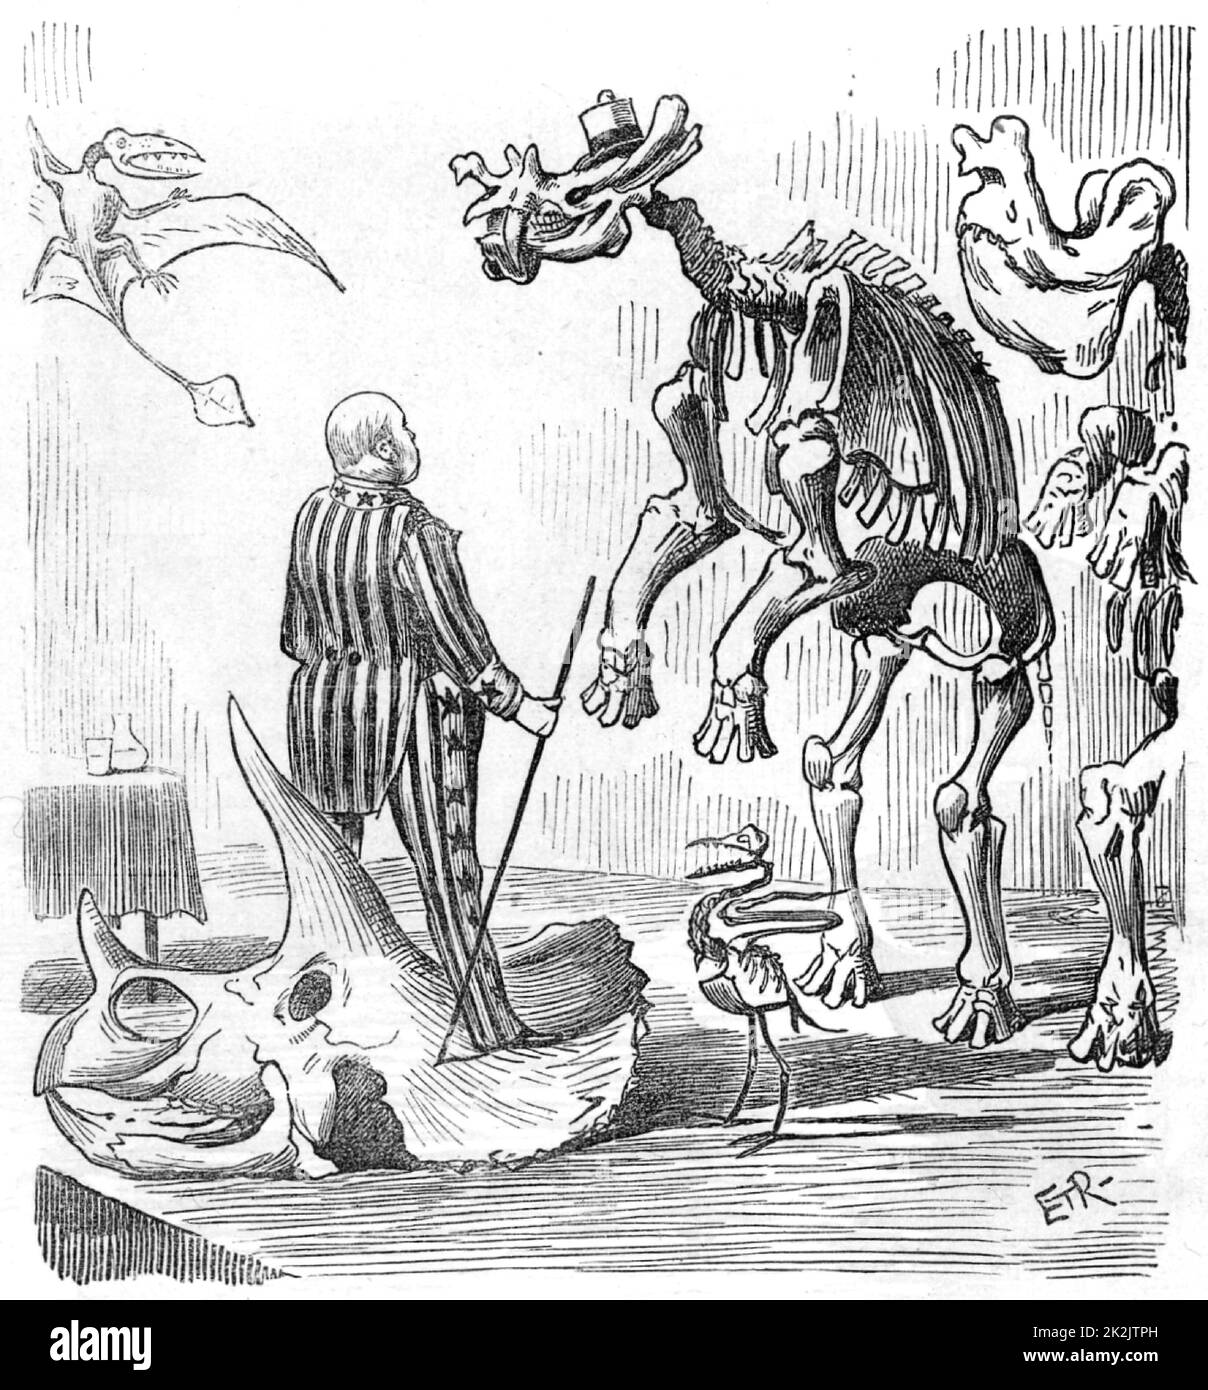 Othniel Charles Marsh (1831-1899) amerikanischer Paläontologe. Erster Professor für Paläontologie an der Yale University. Marsh entdeckte etwa 1.000 fossile Wirbeltiere und organisierte Expeditionen, insbesondere in Nebraska und Colorado. Karikatur aus „Punch“ (London, 13. September 1890). Stockfoto